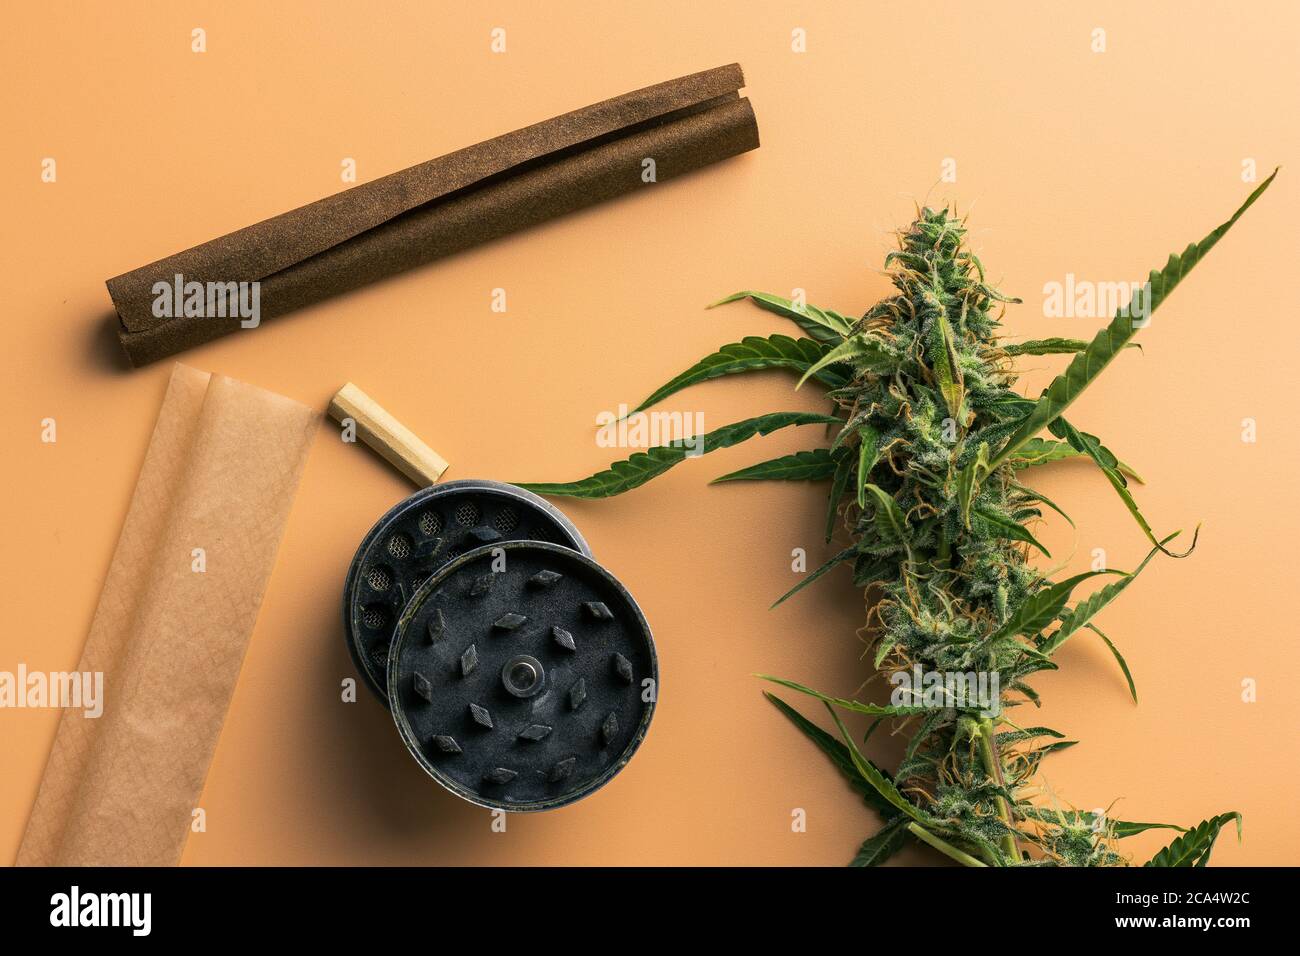 Primo piano della pianta di marijuana e degli accessori per fumare. Smerigliatrice, smussata e carta per giunti, vista dall'alto, disposizione piatta. Germogli di cannabis Foto Stock